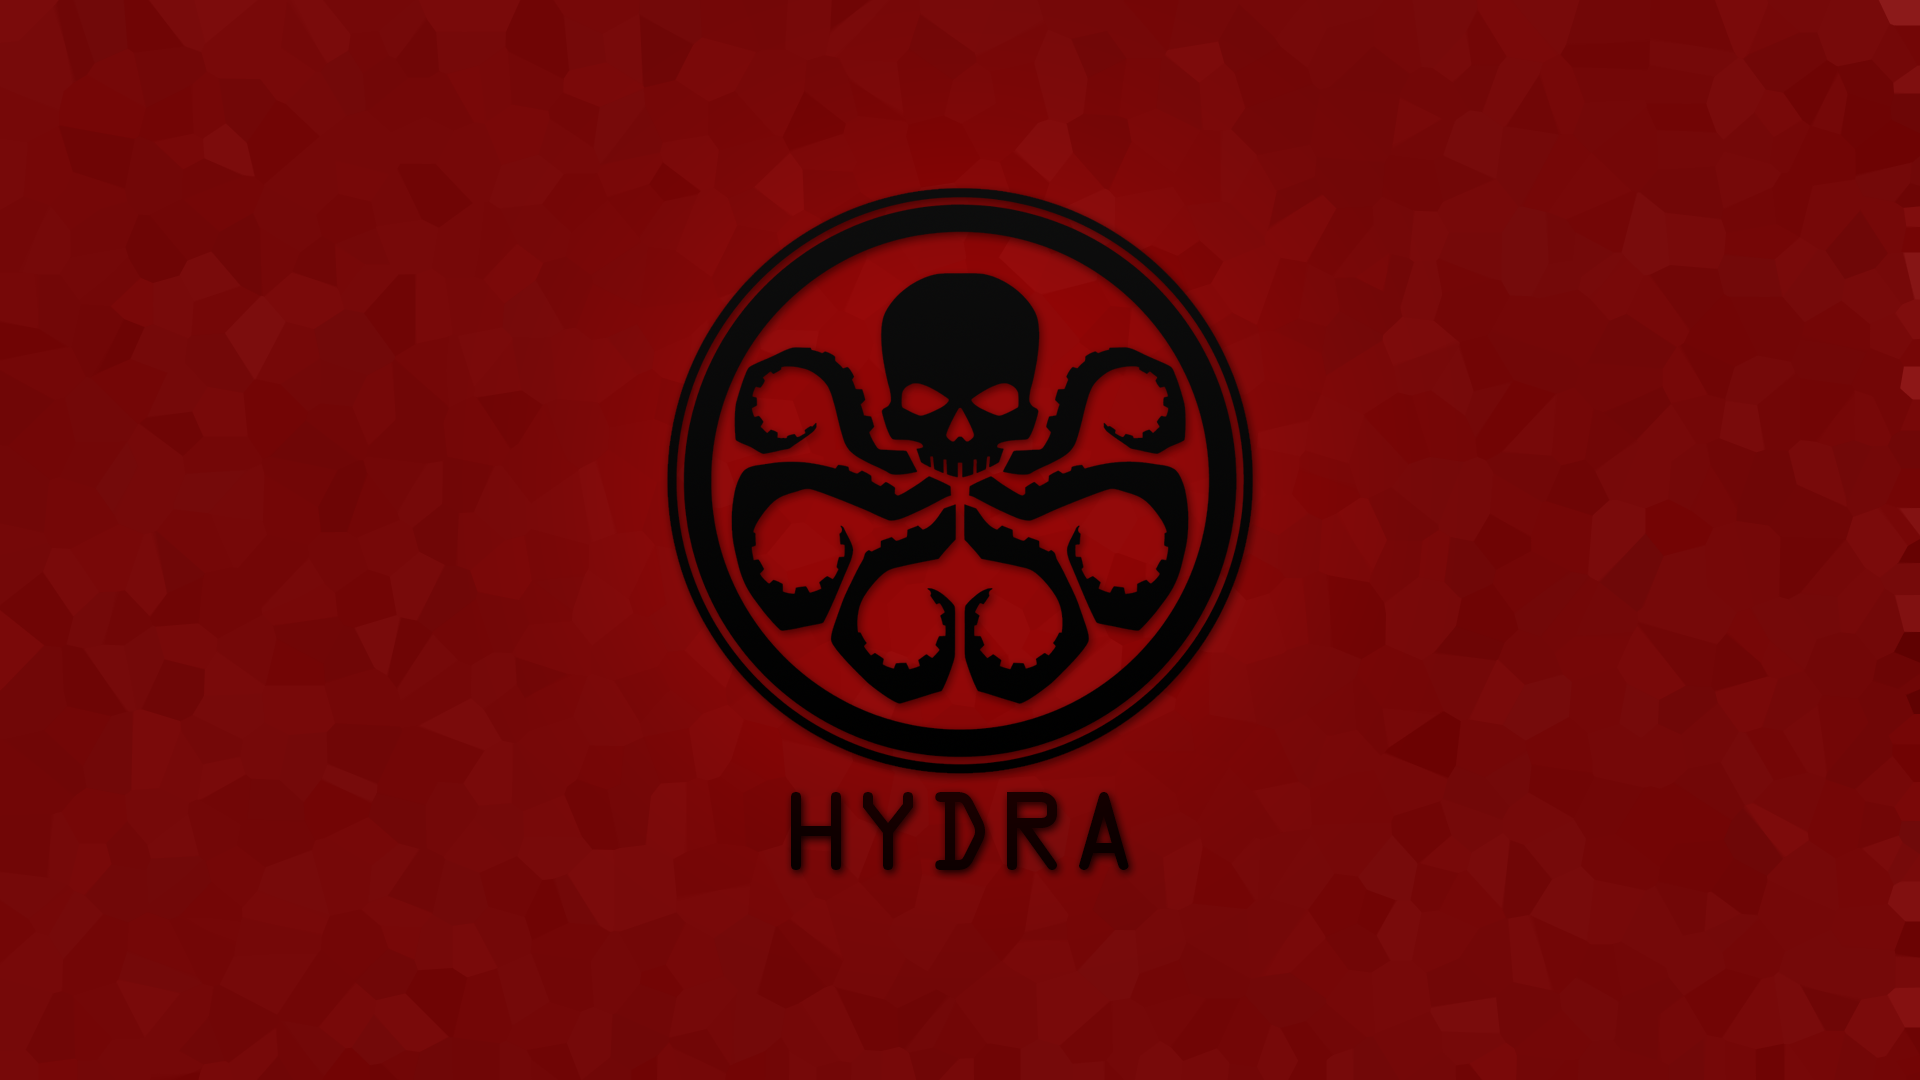 Hydra Wallpaper. Marvel Hydra Wallpaper